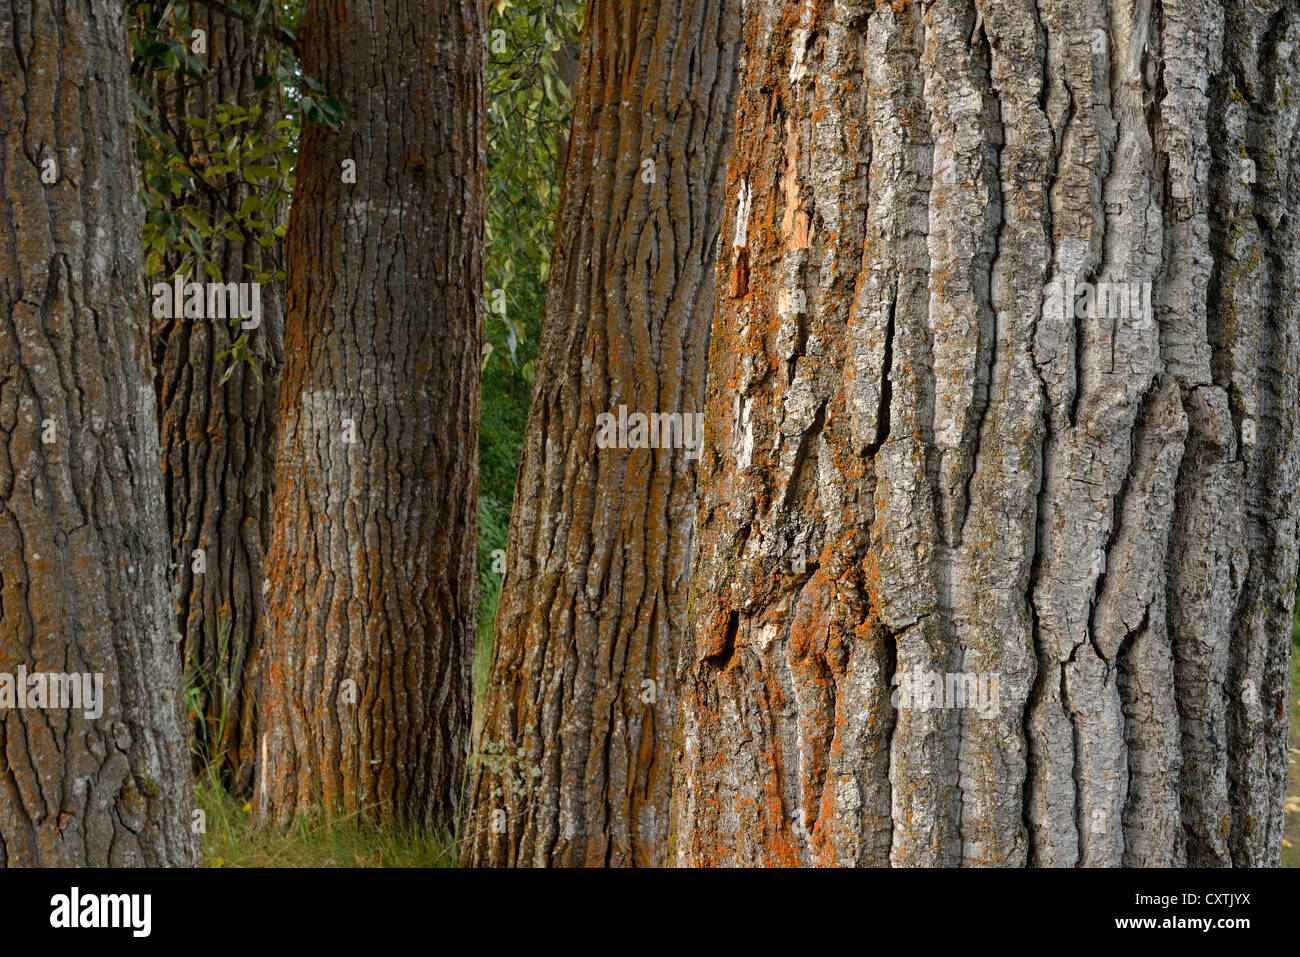 Un close up image d'un peuplement de peuplier noir des arbres présentant en détail l'écorce rugueuse de leurs troncs. Banque D'Images